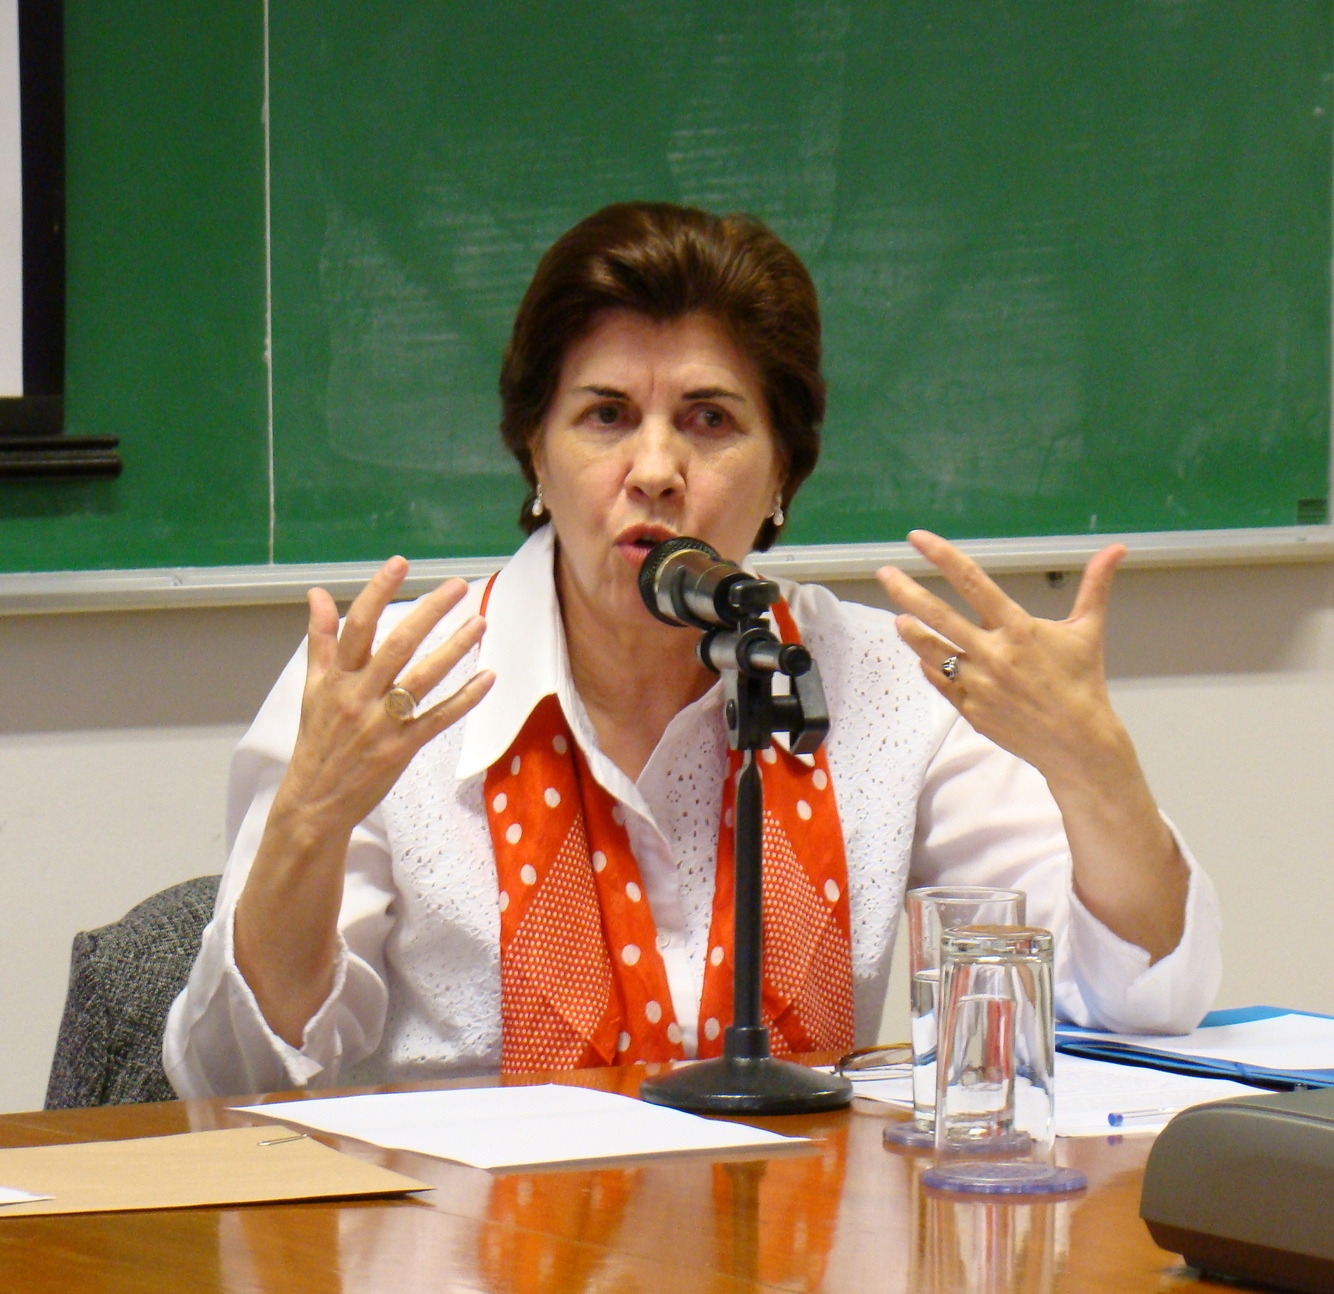 Maria Ligia em destaque, falando ao microfone durante a apresentação